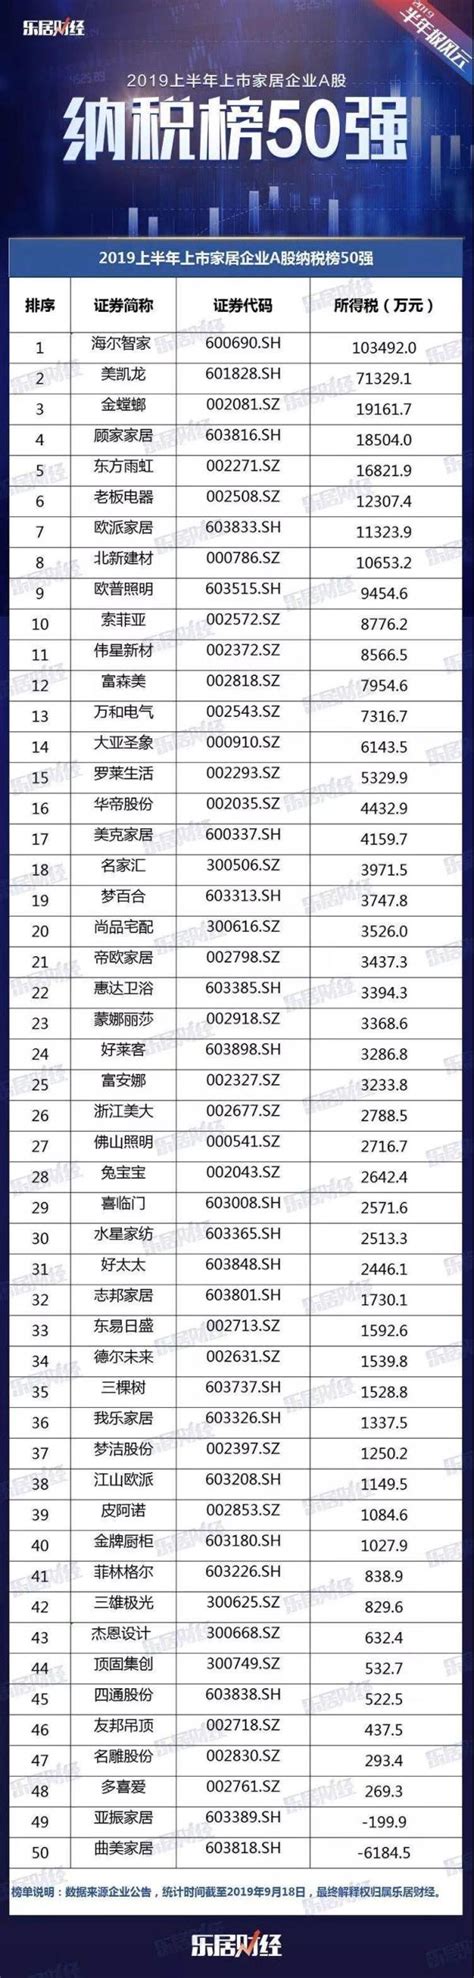 莱阳市2018年1-12月企业纳税排行榜出炉，向纳税人致敬！_海南频道_凤凰网